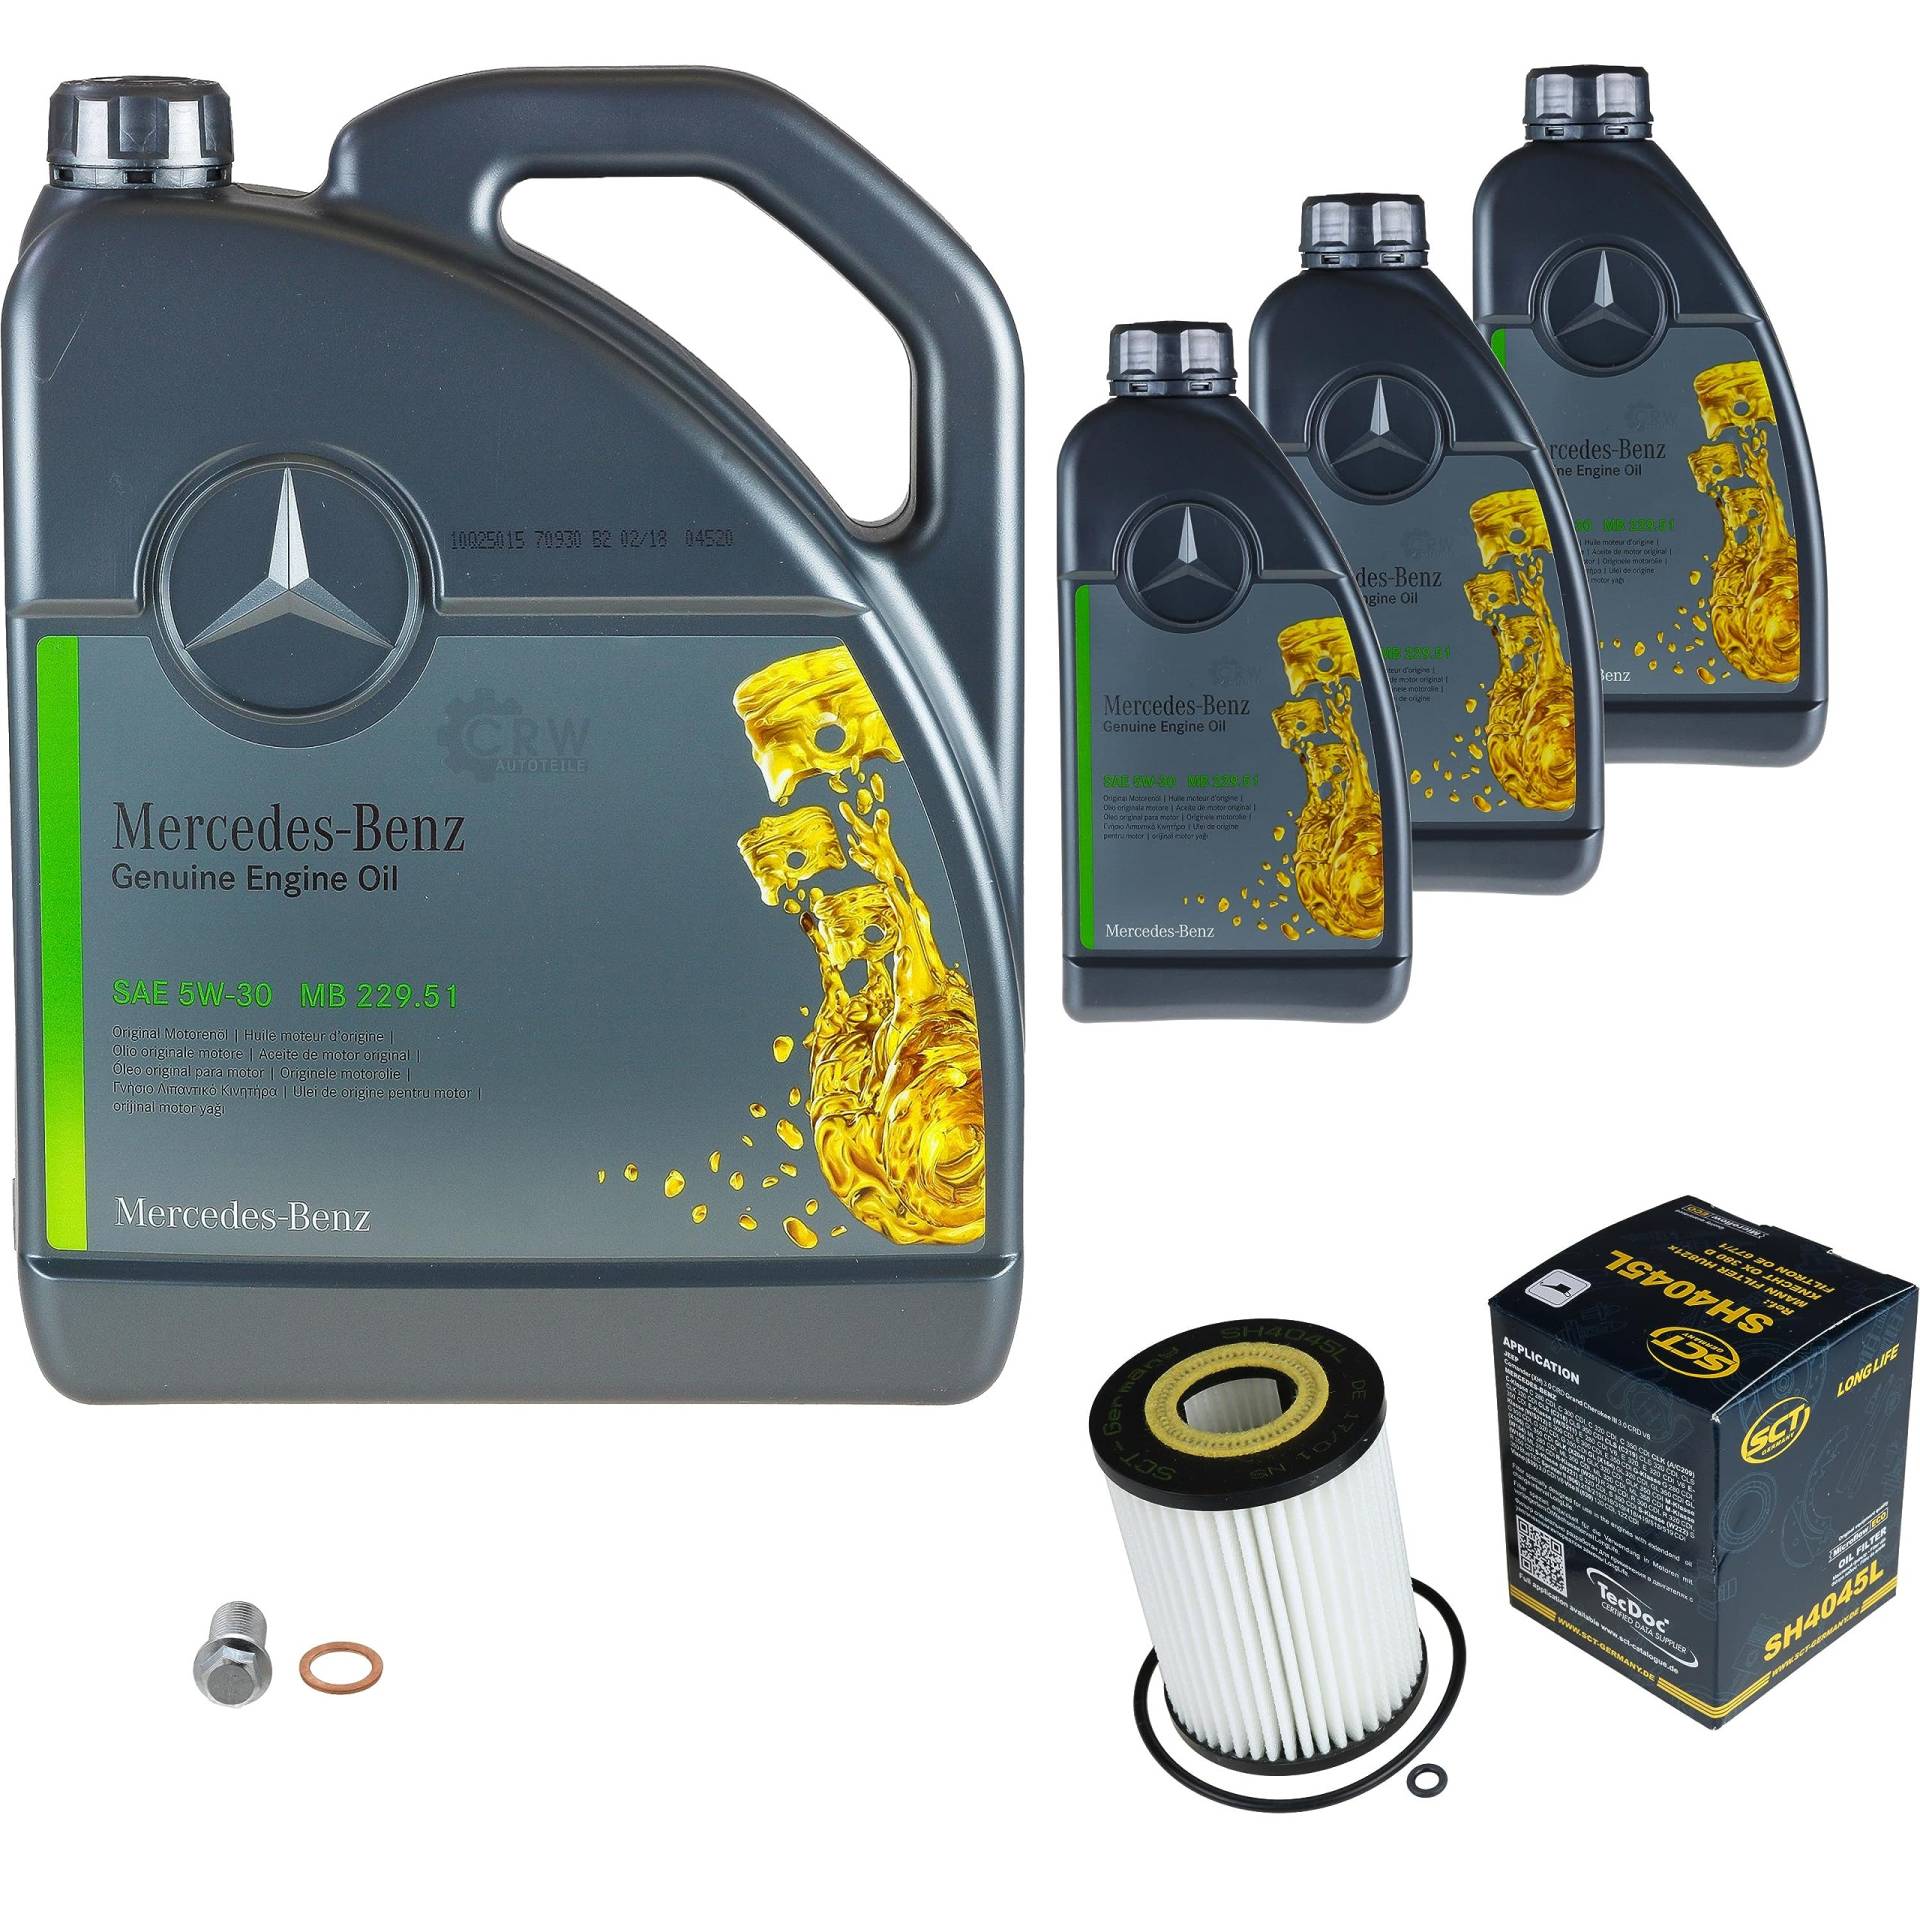 Inspektionspaket Wartungspaket Filterset mit 8 L Motoröl MB 229.52 5W-30, Ölfilter, Verschlussschraube von EISENFELS